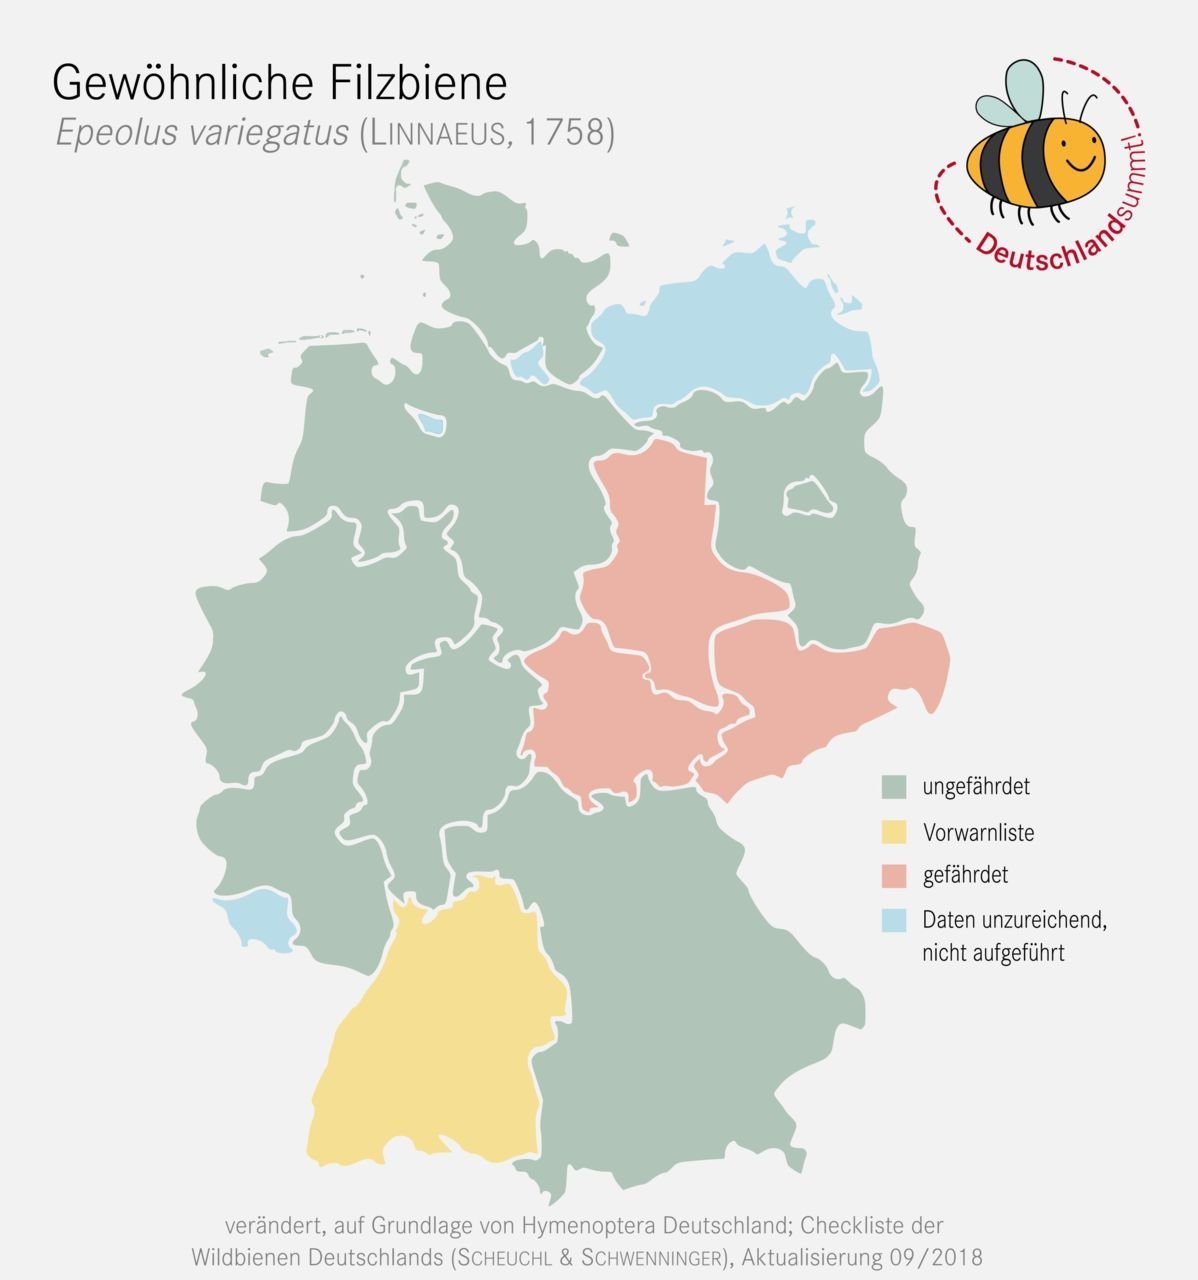 Nachweiskarte und Gefährdung der Gewöhnlichen Filzbiene in Deutschland. Klick führt zu Großansicht in neuem Fenster.